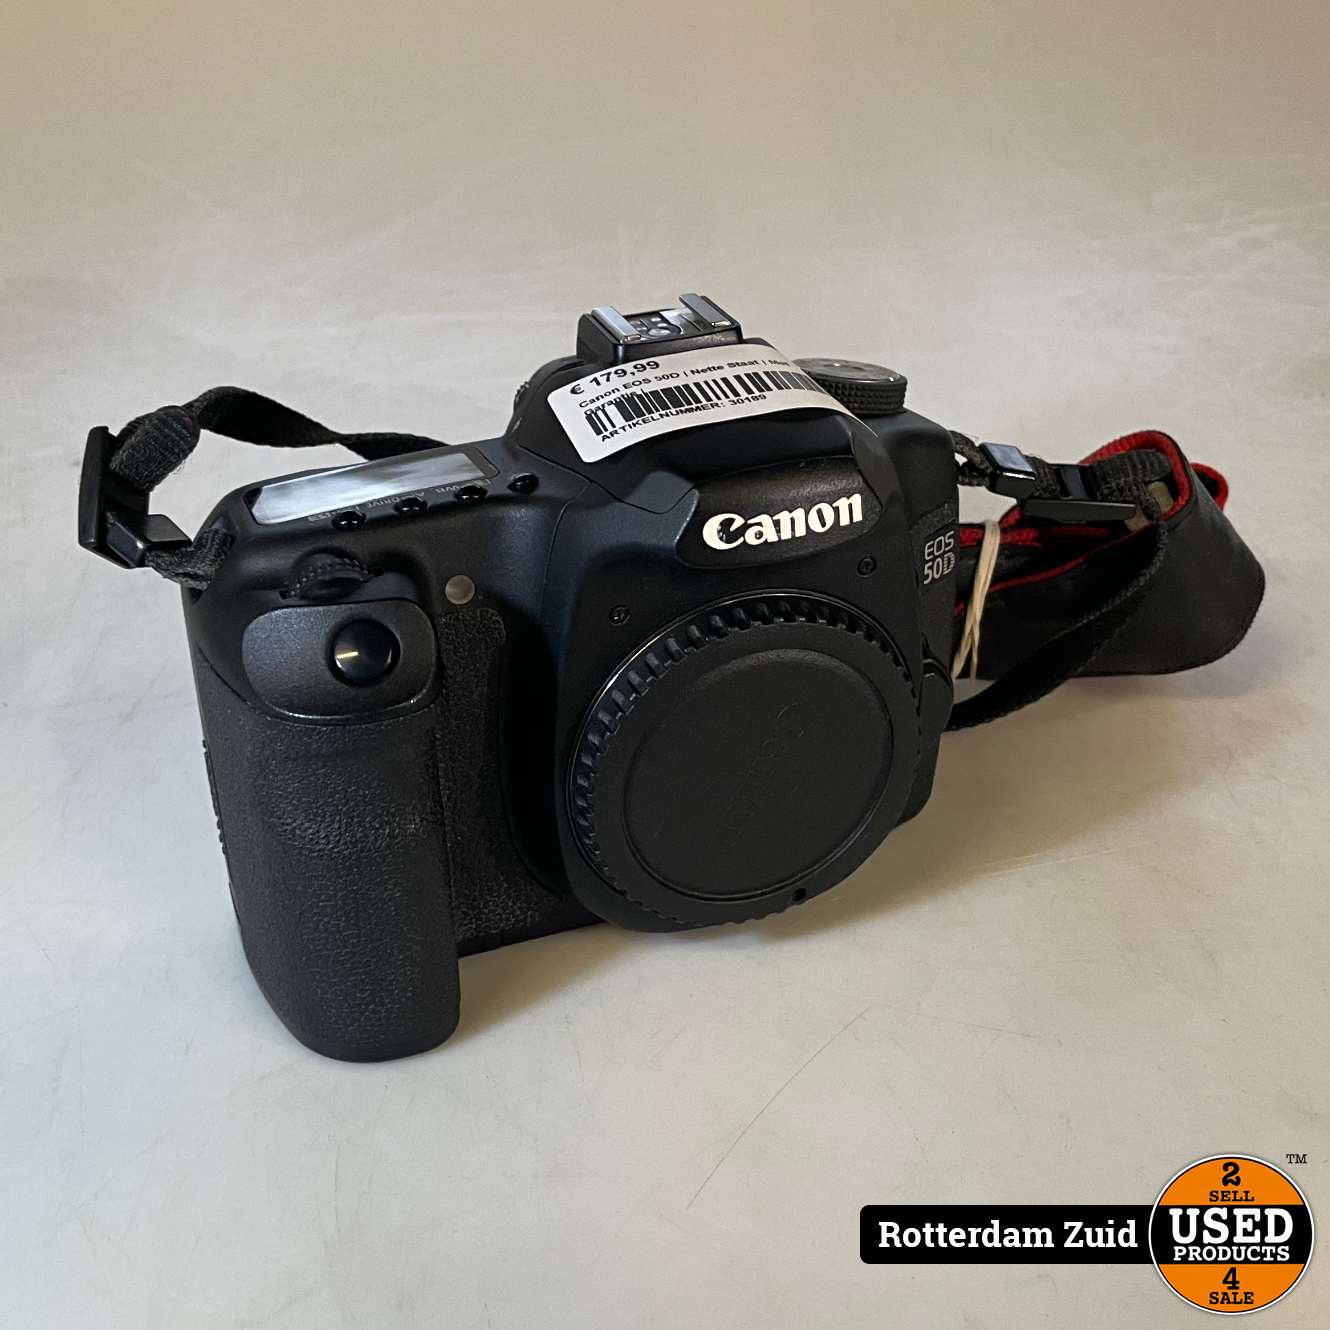 Canon EOS 50D | Nette Staat Met Garantie - Products Rotterdam